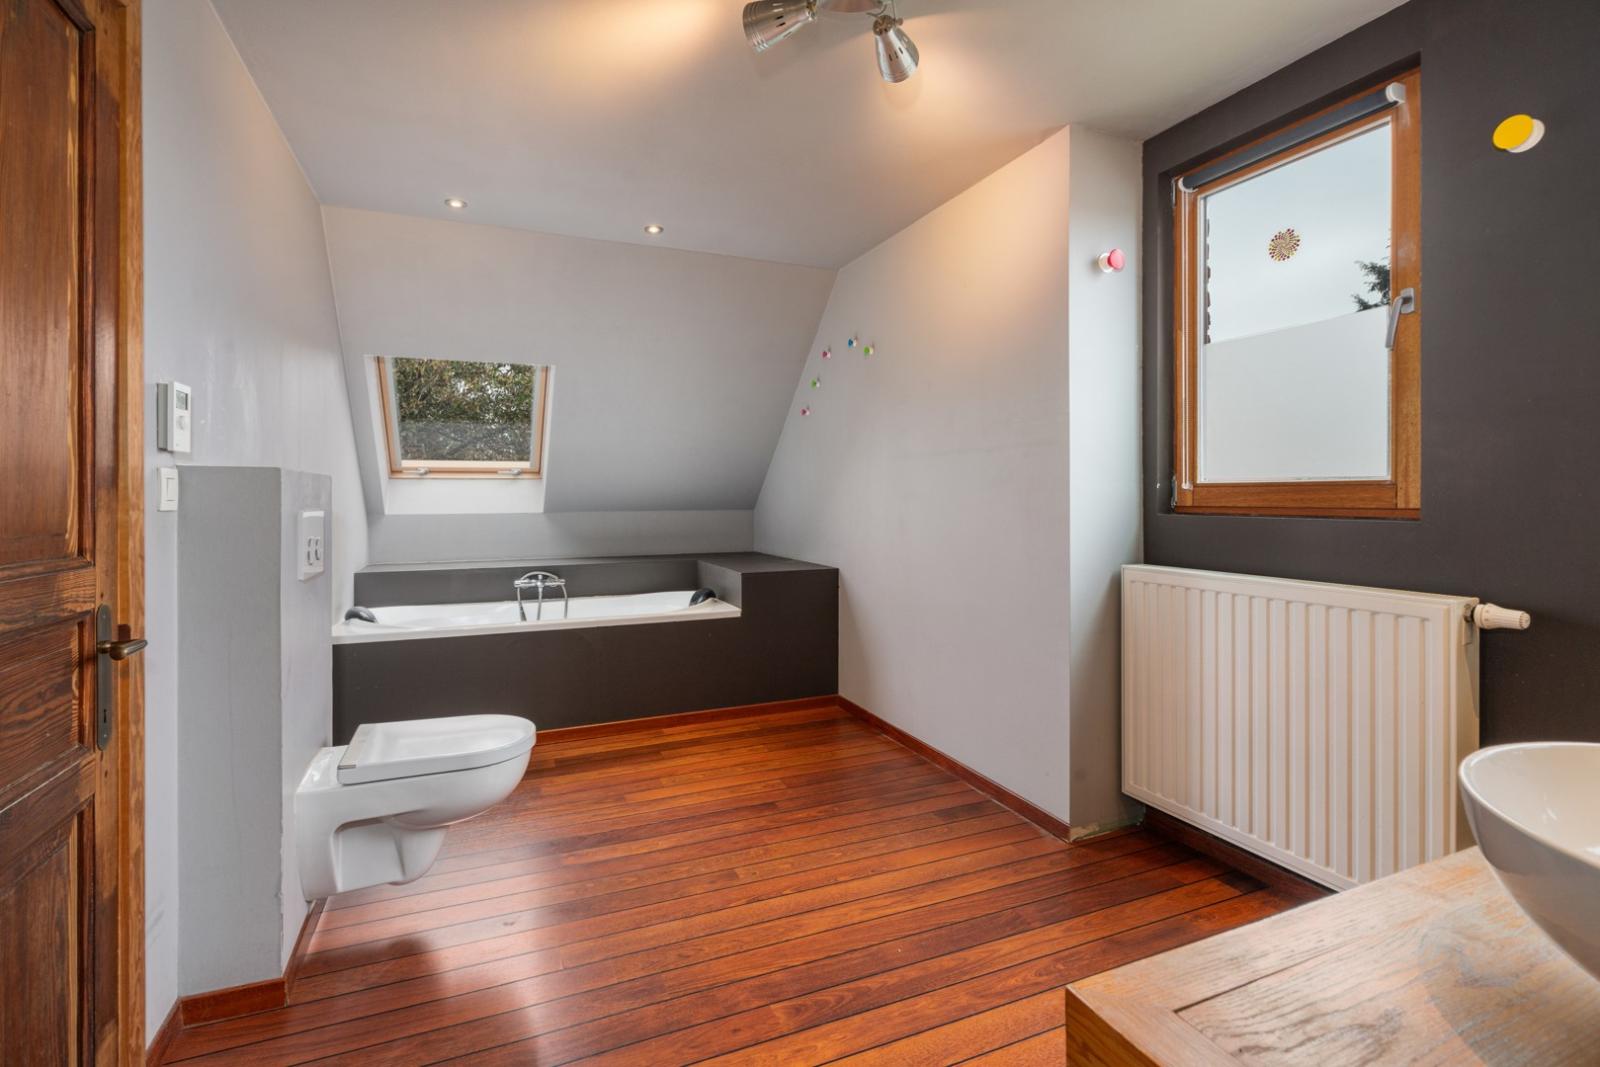 Kwalitatief gerenoveerde HOB met vier slaapkamers & garage te Tielt!